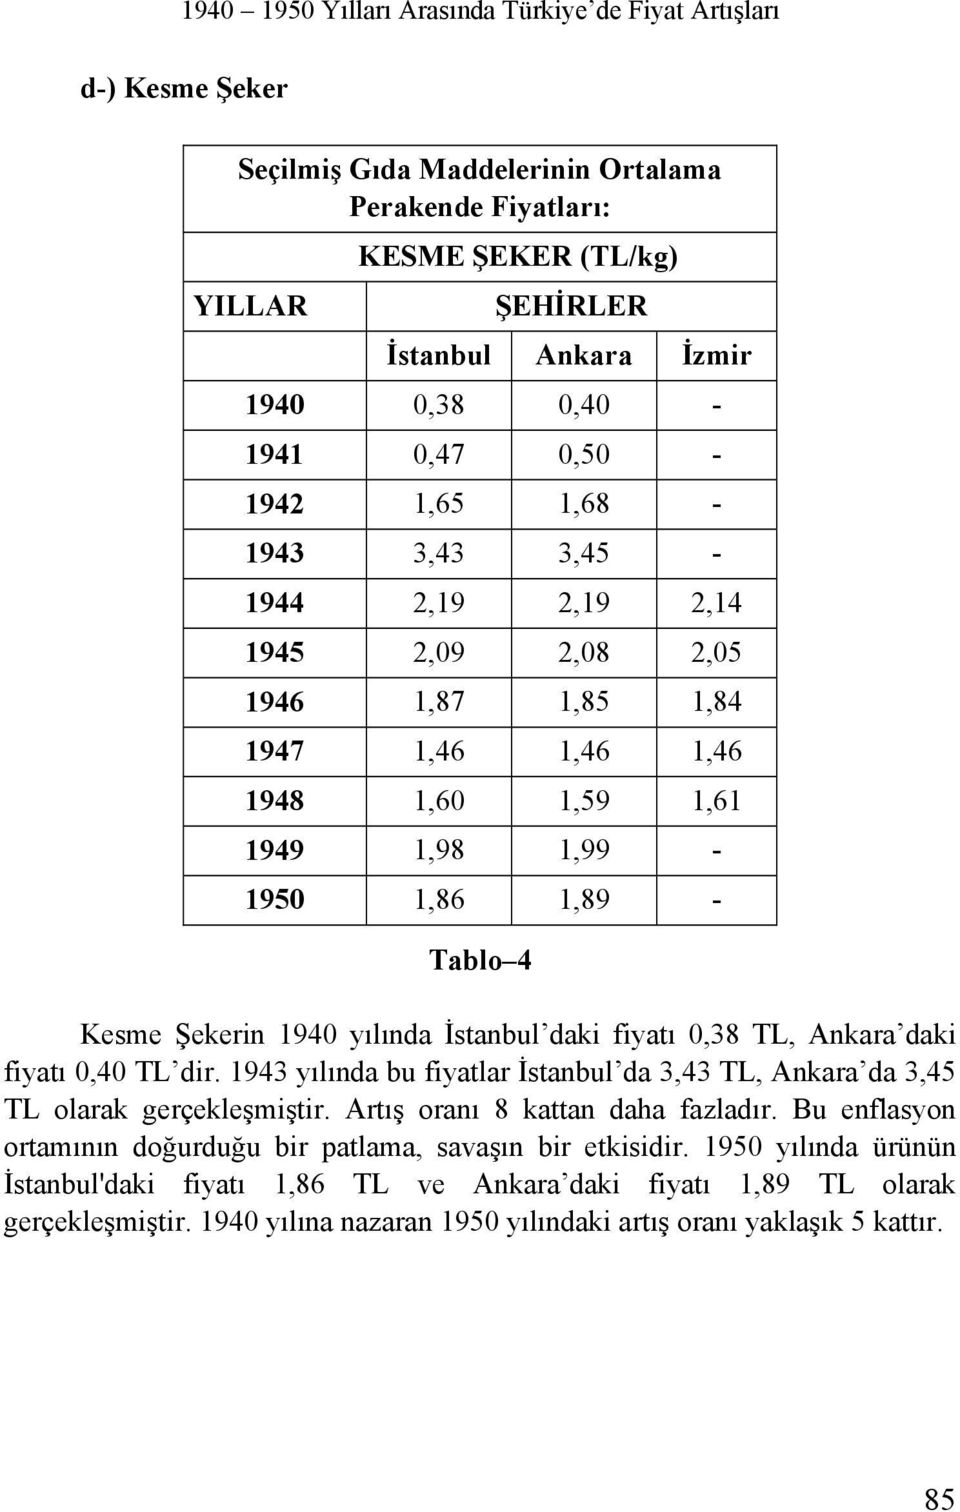 Şekerin 1940 yılında İstanbul daki fiyatı 0,38 TL, Ankara daki fiyatı 0,40 TL dir. 1943 yılında bu fiyatlar İstanbul da 3,43 TL, Ankara da 3,45 TL olarak gerçekleşmiştir.